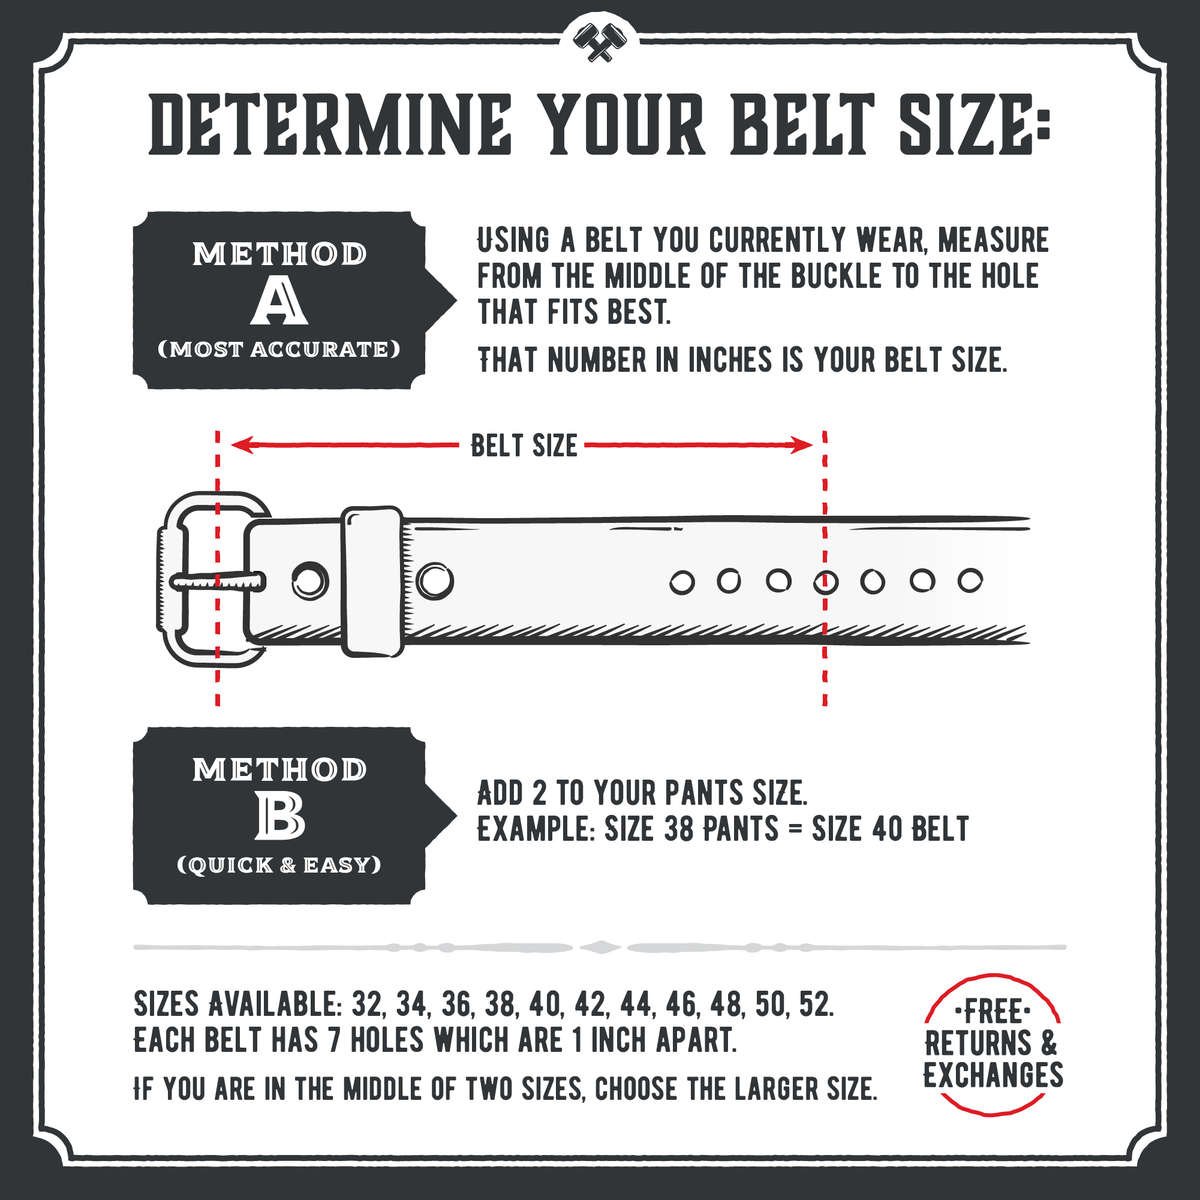 Belt Length Chart